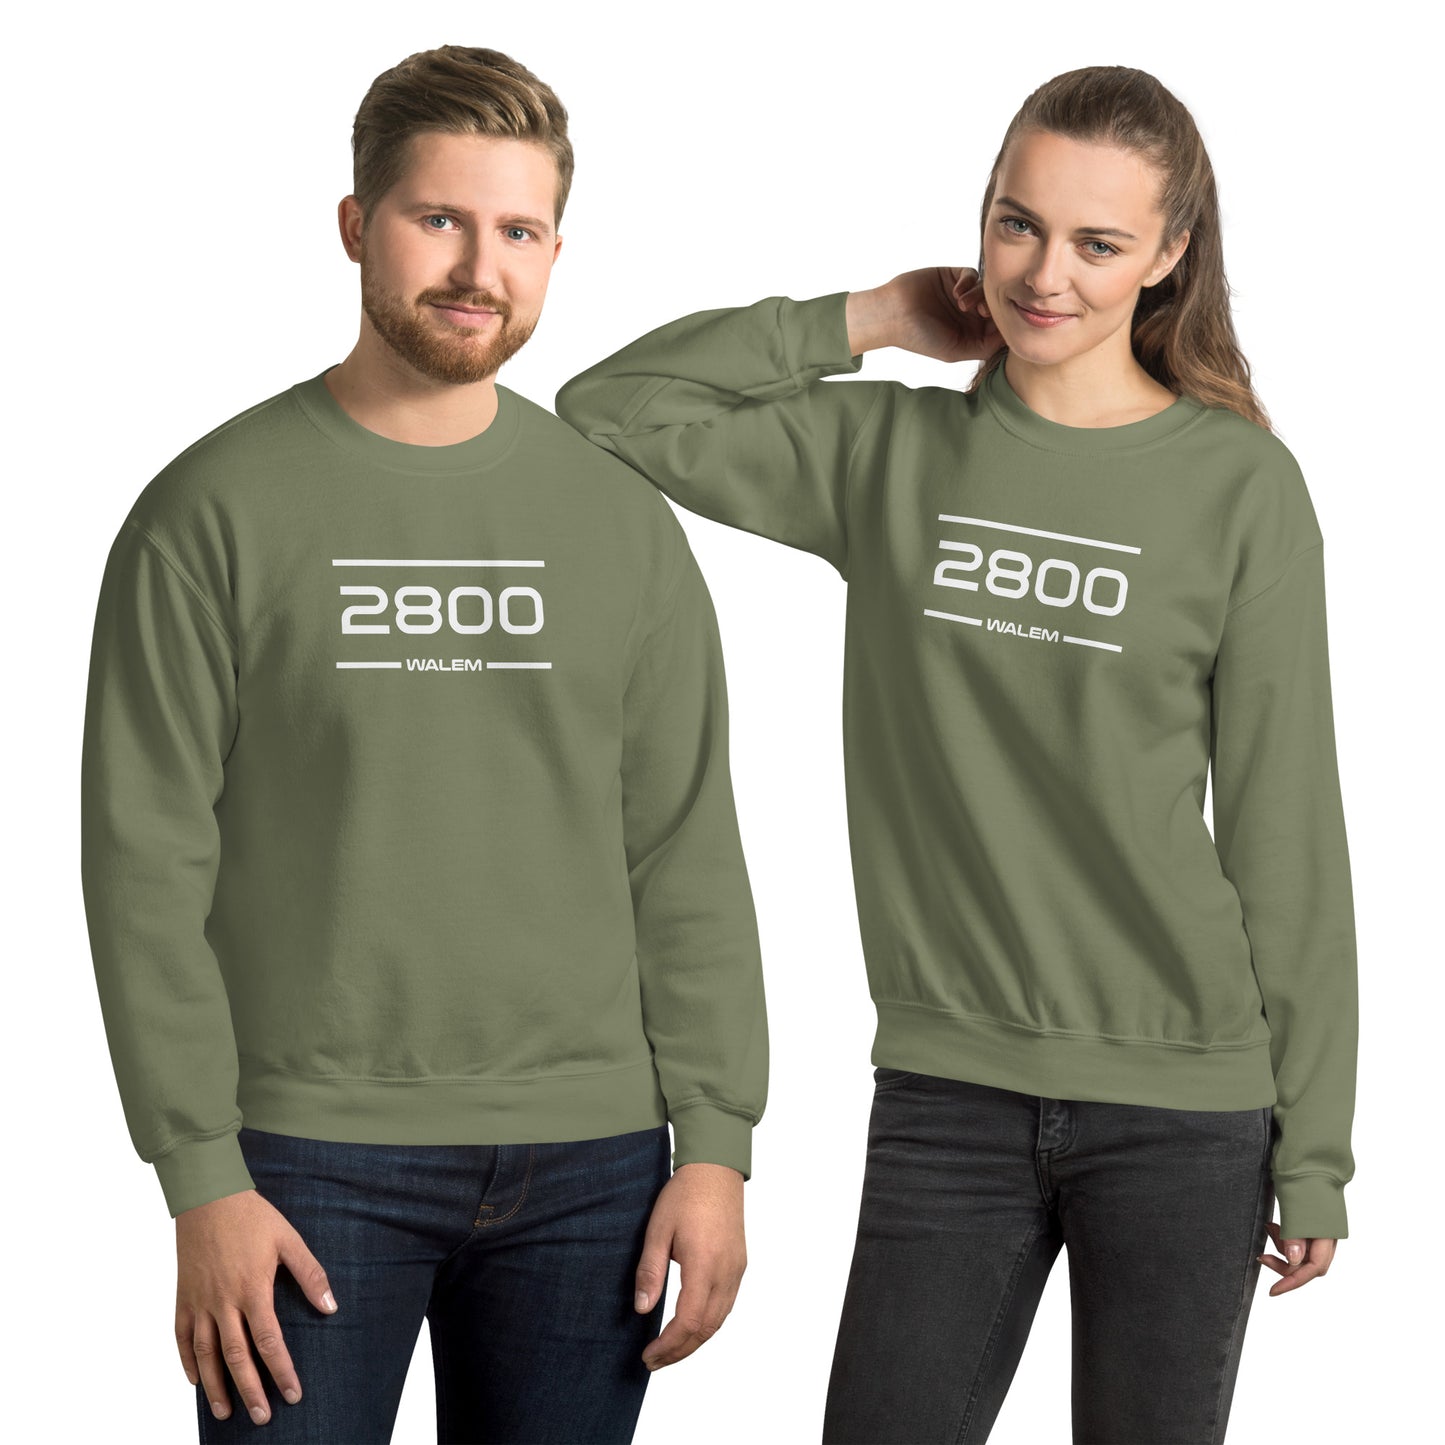 Sweater - 2800 - Walem (M/V)